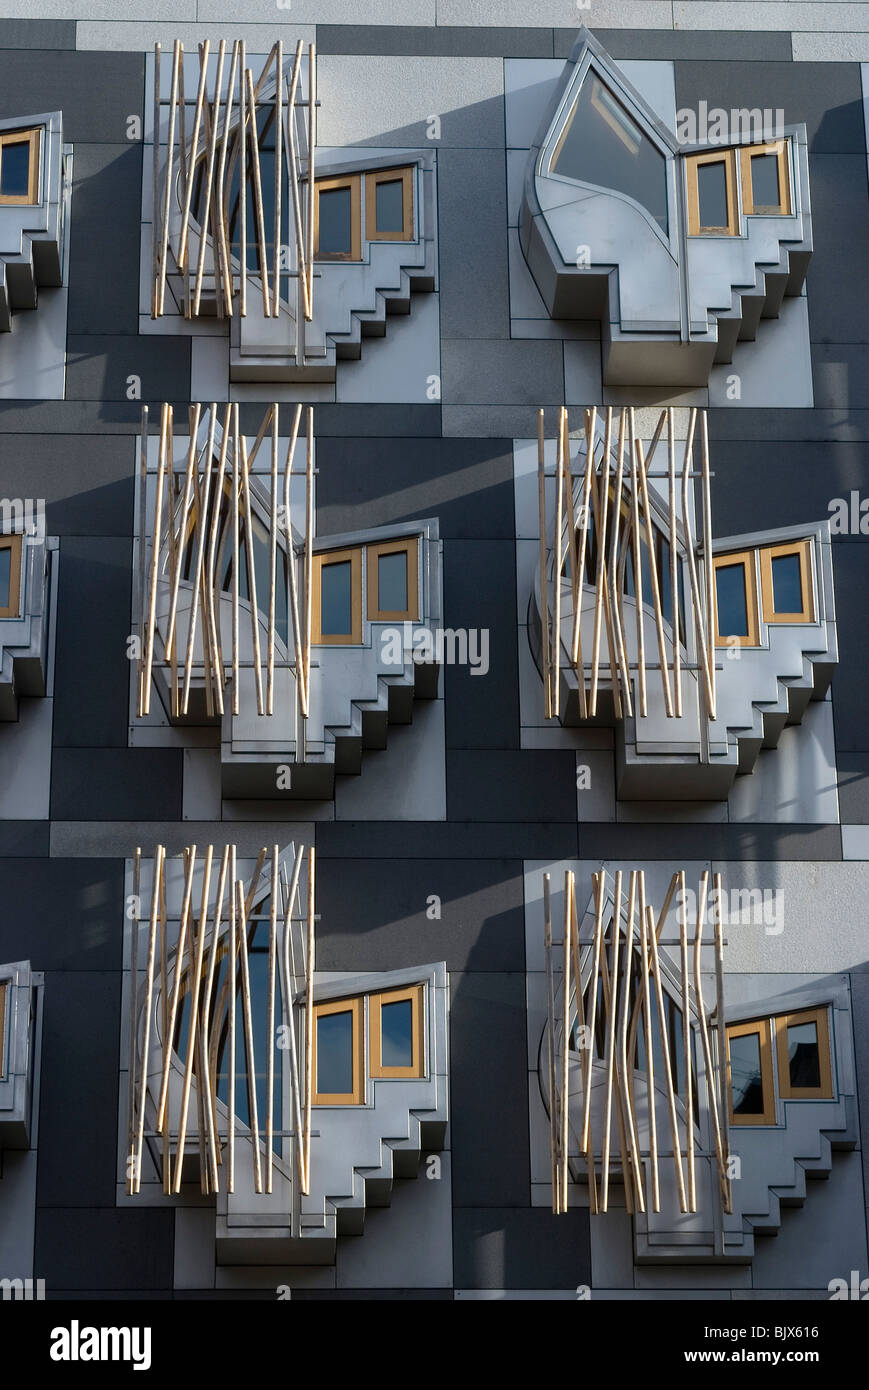 Fenster-Ausschnitt aus dem neuen schottischen Parlament (Architekt Enric Miralles), Edinburgh, Schottland Stockfoto